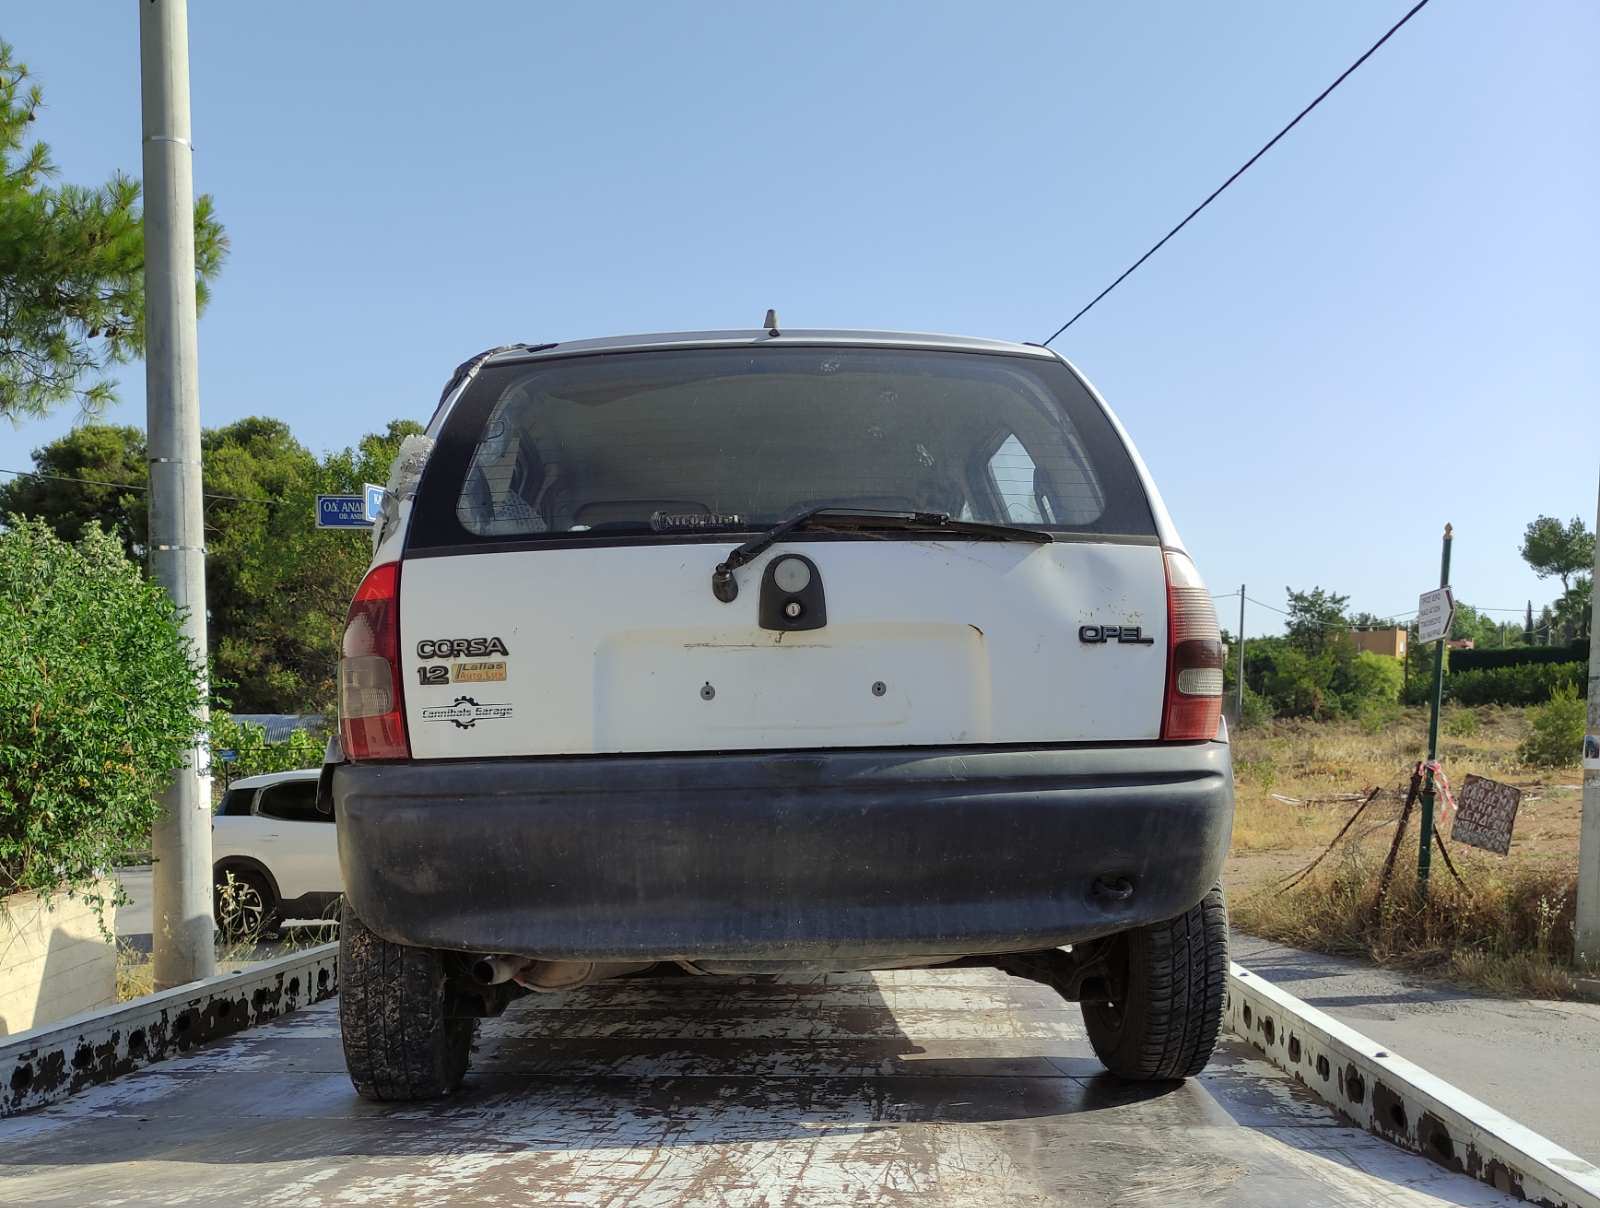 Δήμος Κηφισιάς: Περισυλλογή εγκαταλελειμμένων οχημάτων